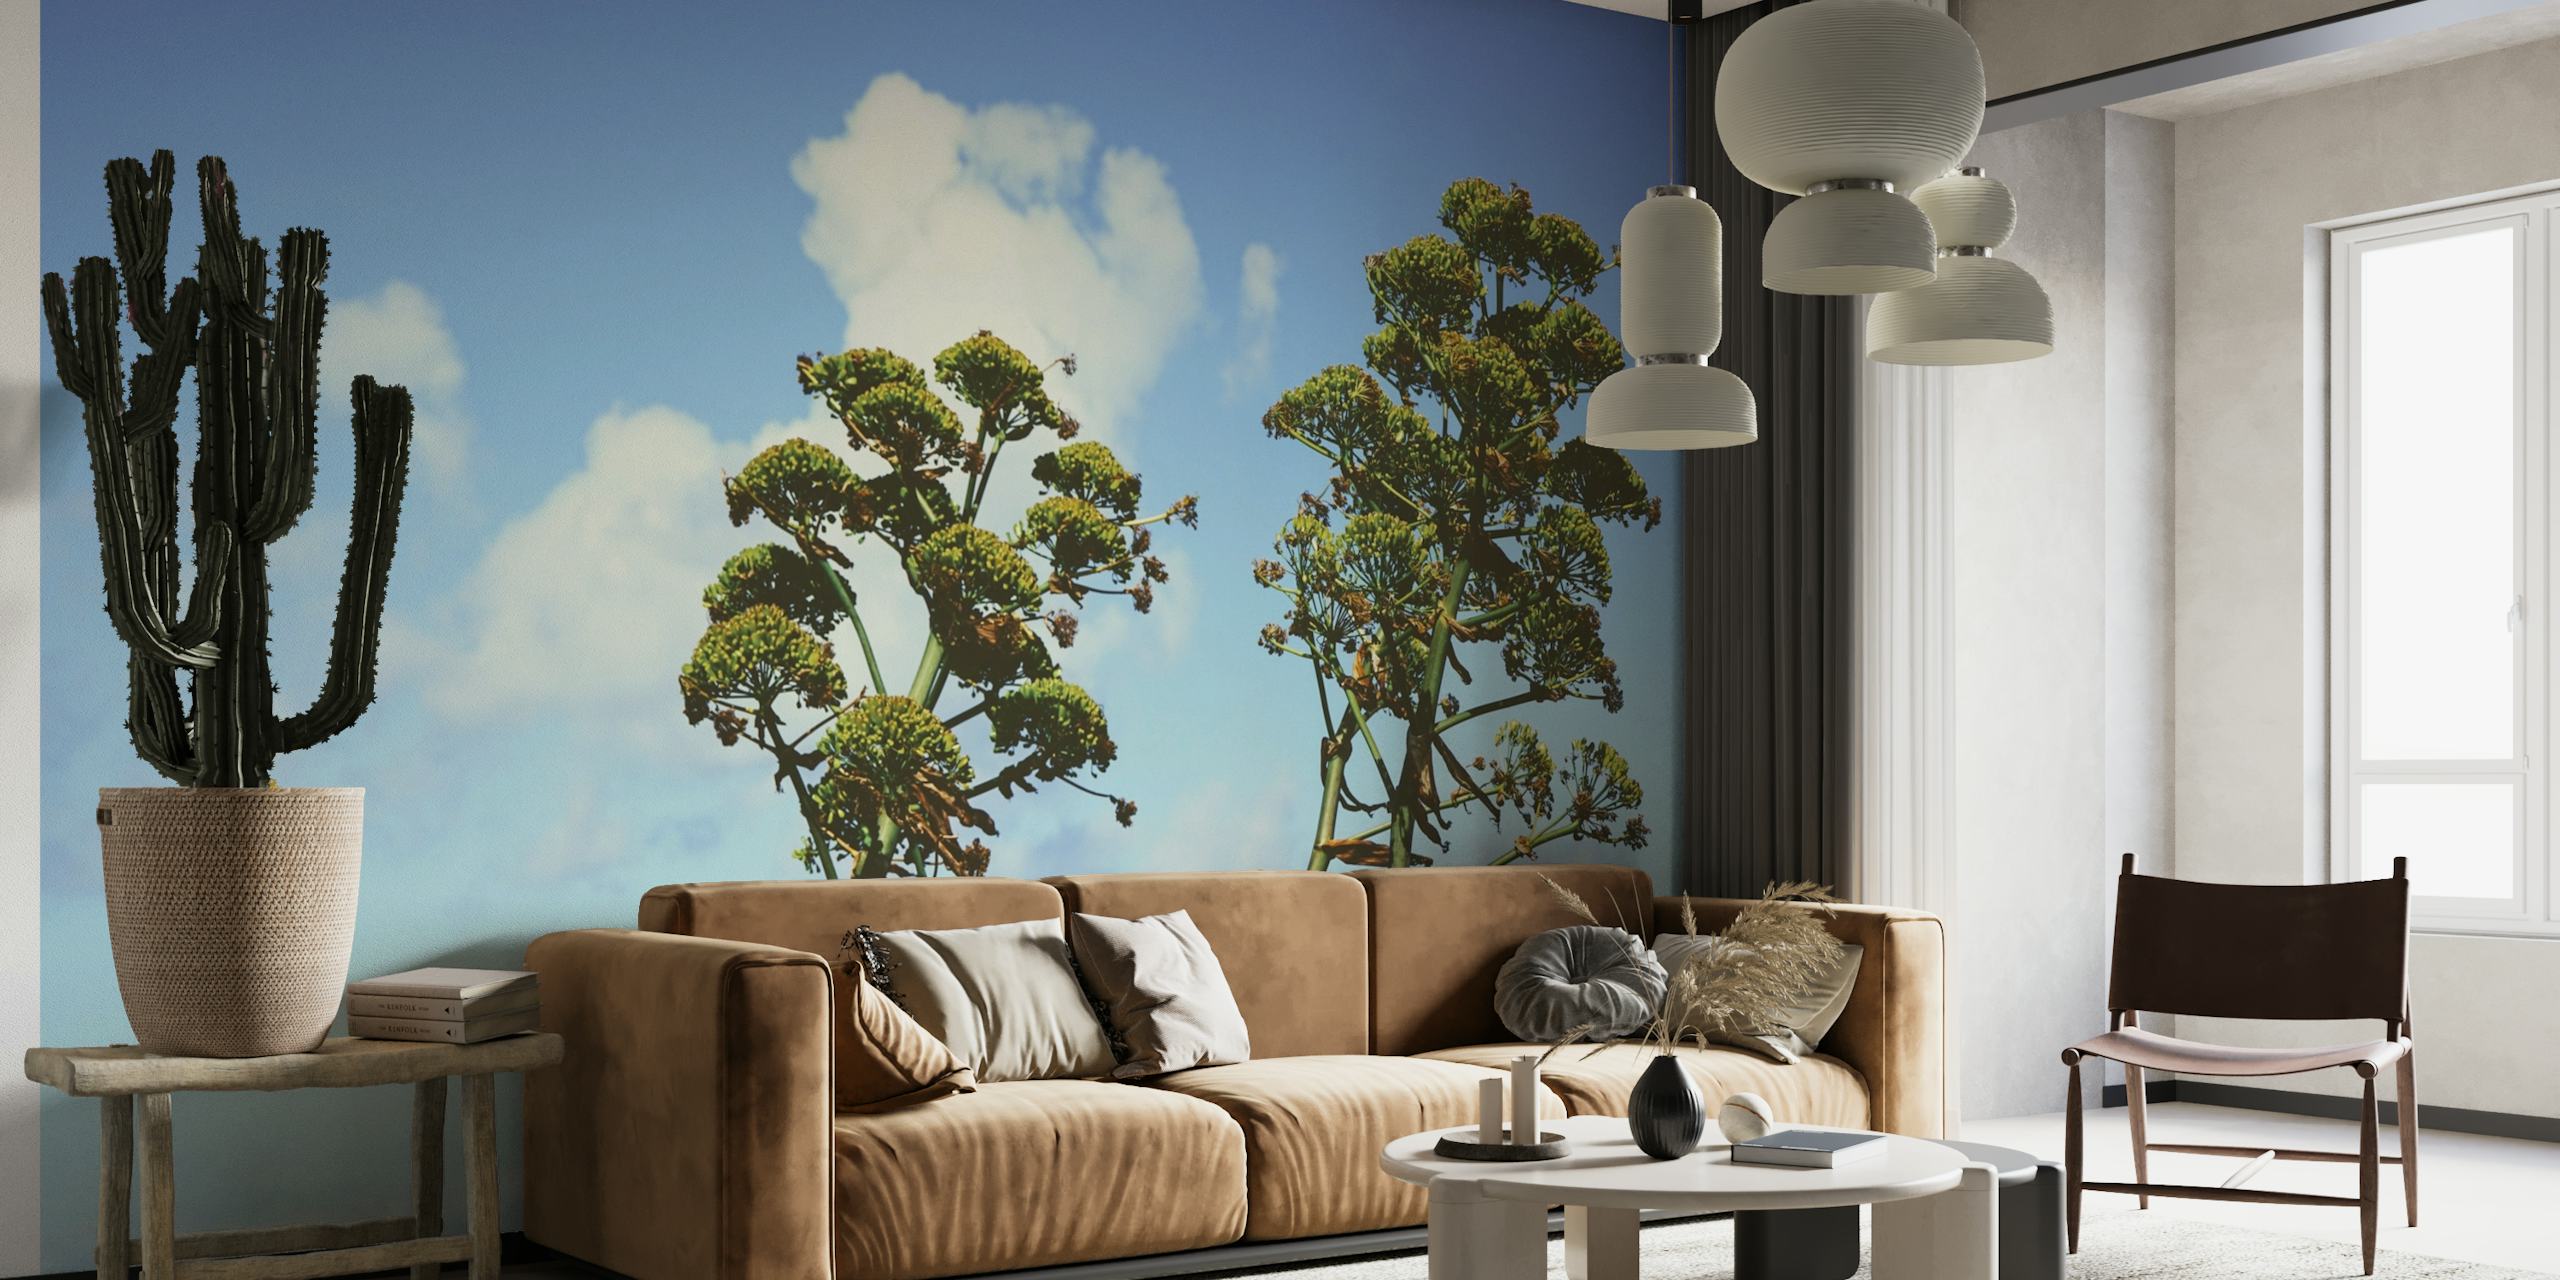 Mural botánico zen con árboles altos y follaje exuberante contra un cielo azul